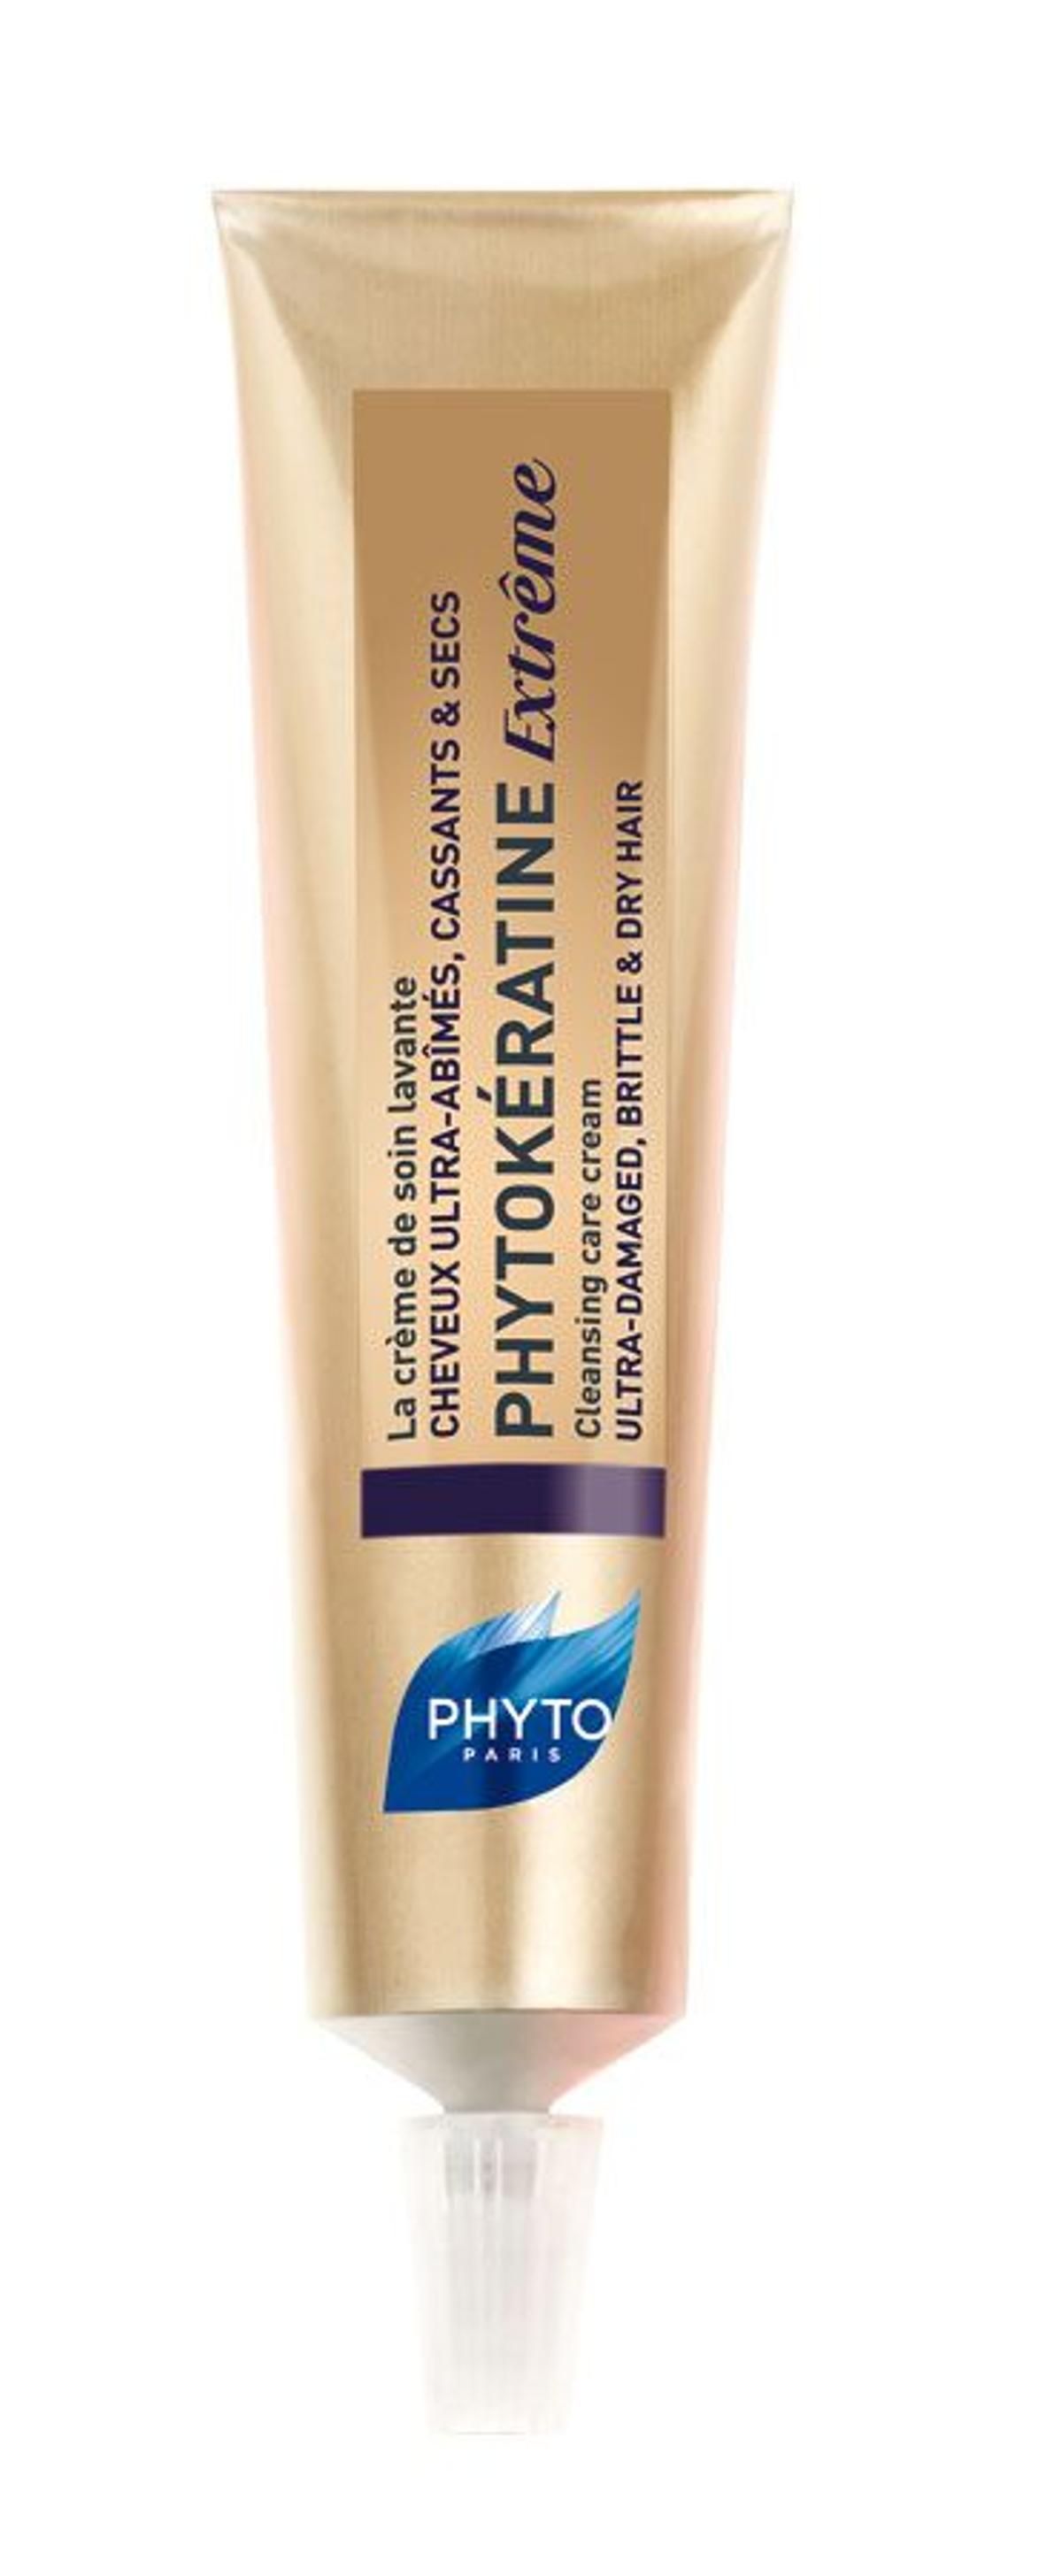 Puntas a salvo: Crema lavante Phytokétatine Extrême, Phyto